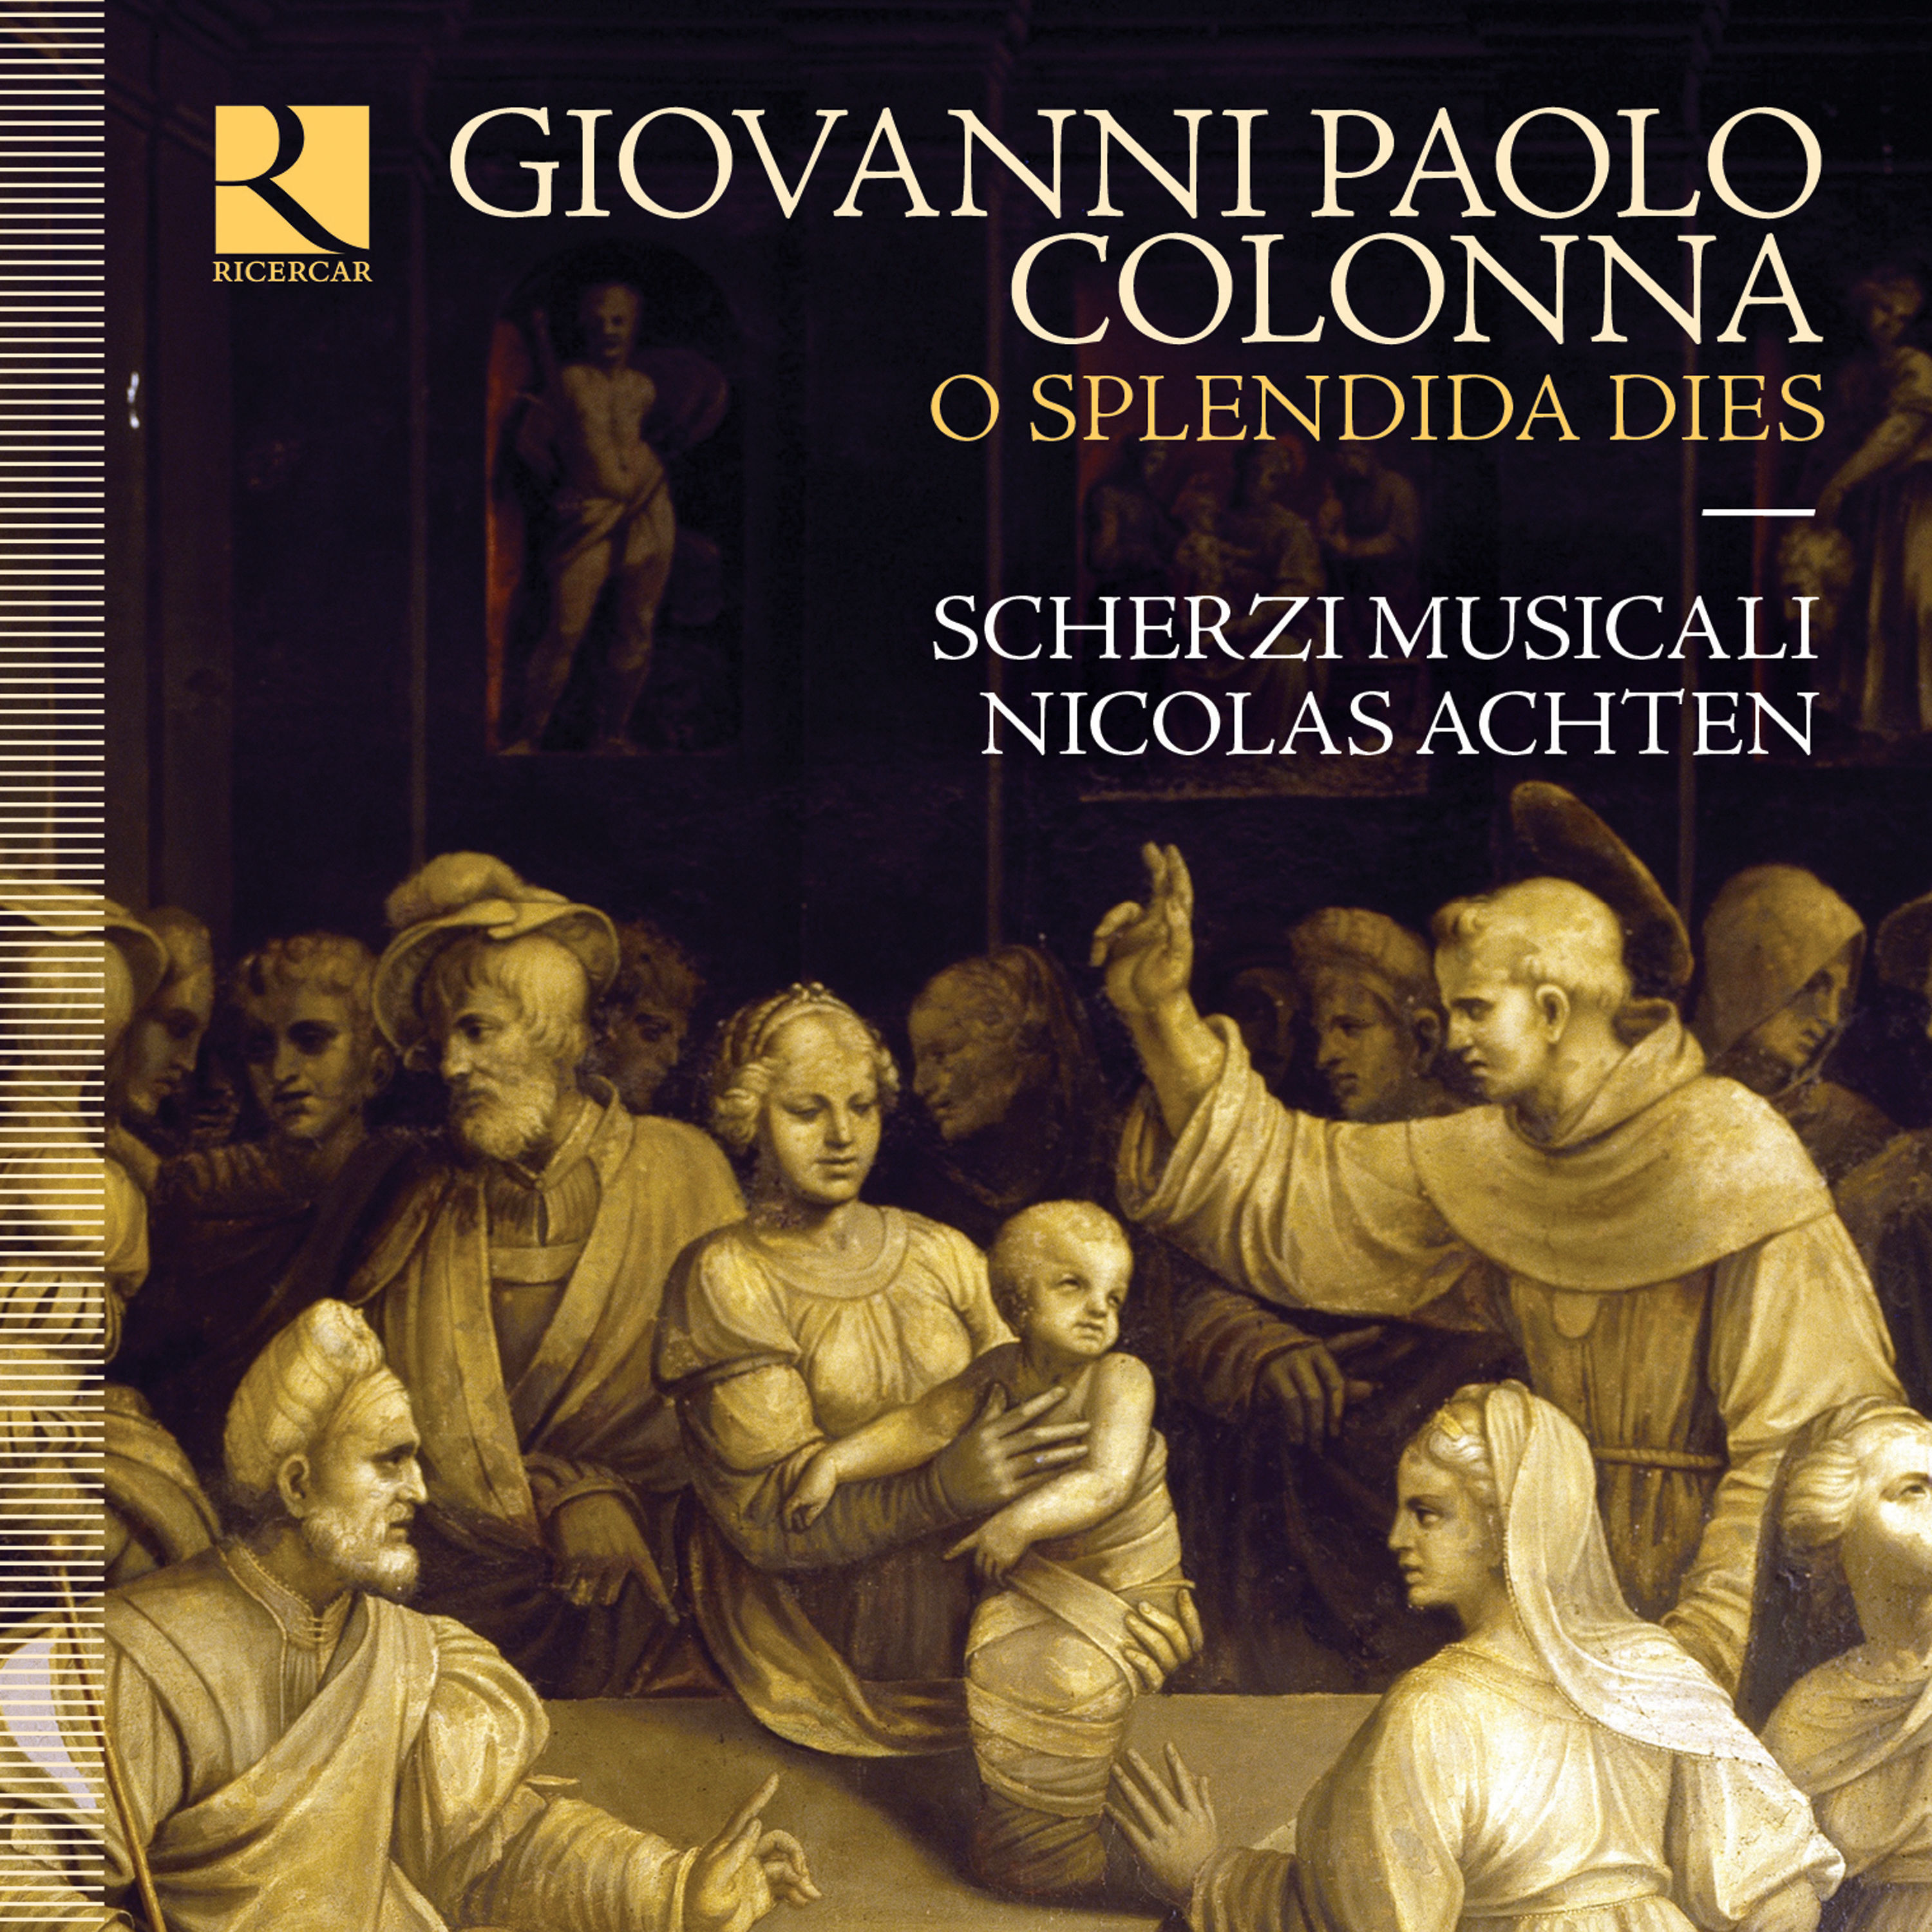 Scherzi Musicali & Nicolas Achten – Colonna: O splendida dies (2019) [FLAC 24bit/192kHz]